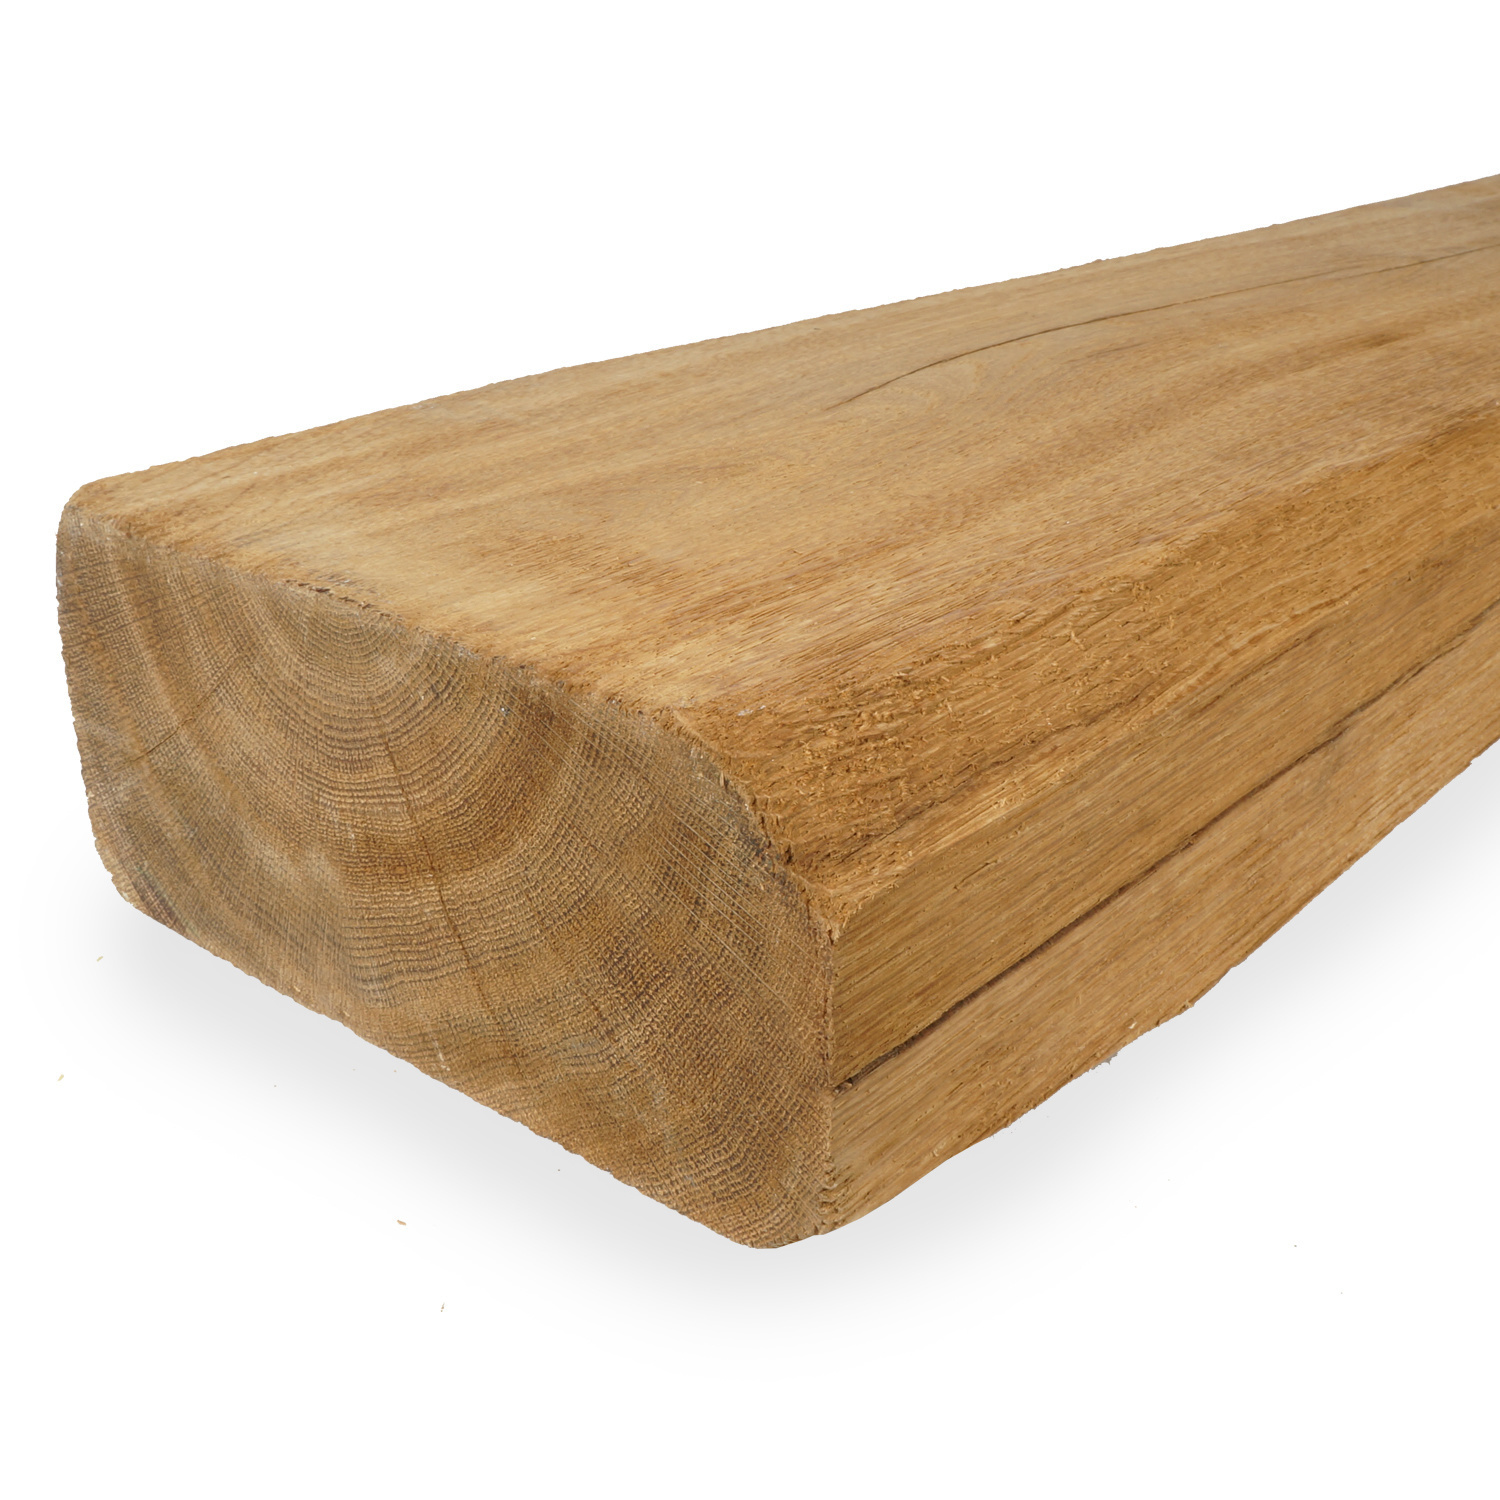  Alte Eichenbalke (gealtert) 70x240 mm - Gehobelt, gebürstet & geräuchert - Europäisches Eichenholz rustikal - natürlich getrocknet (HF 20-25%)